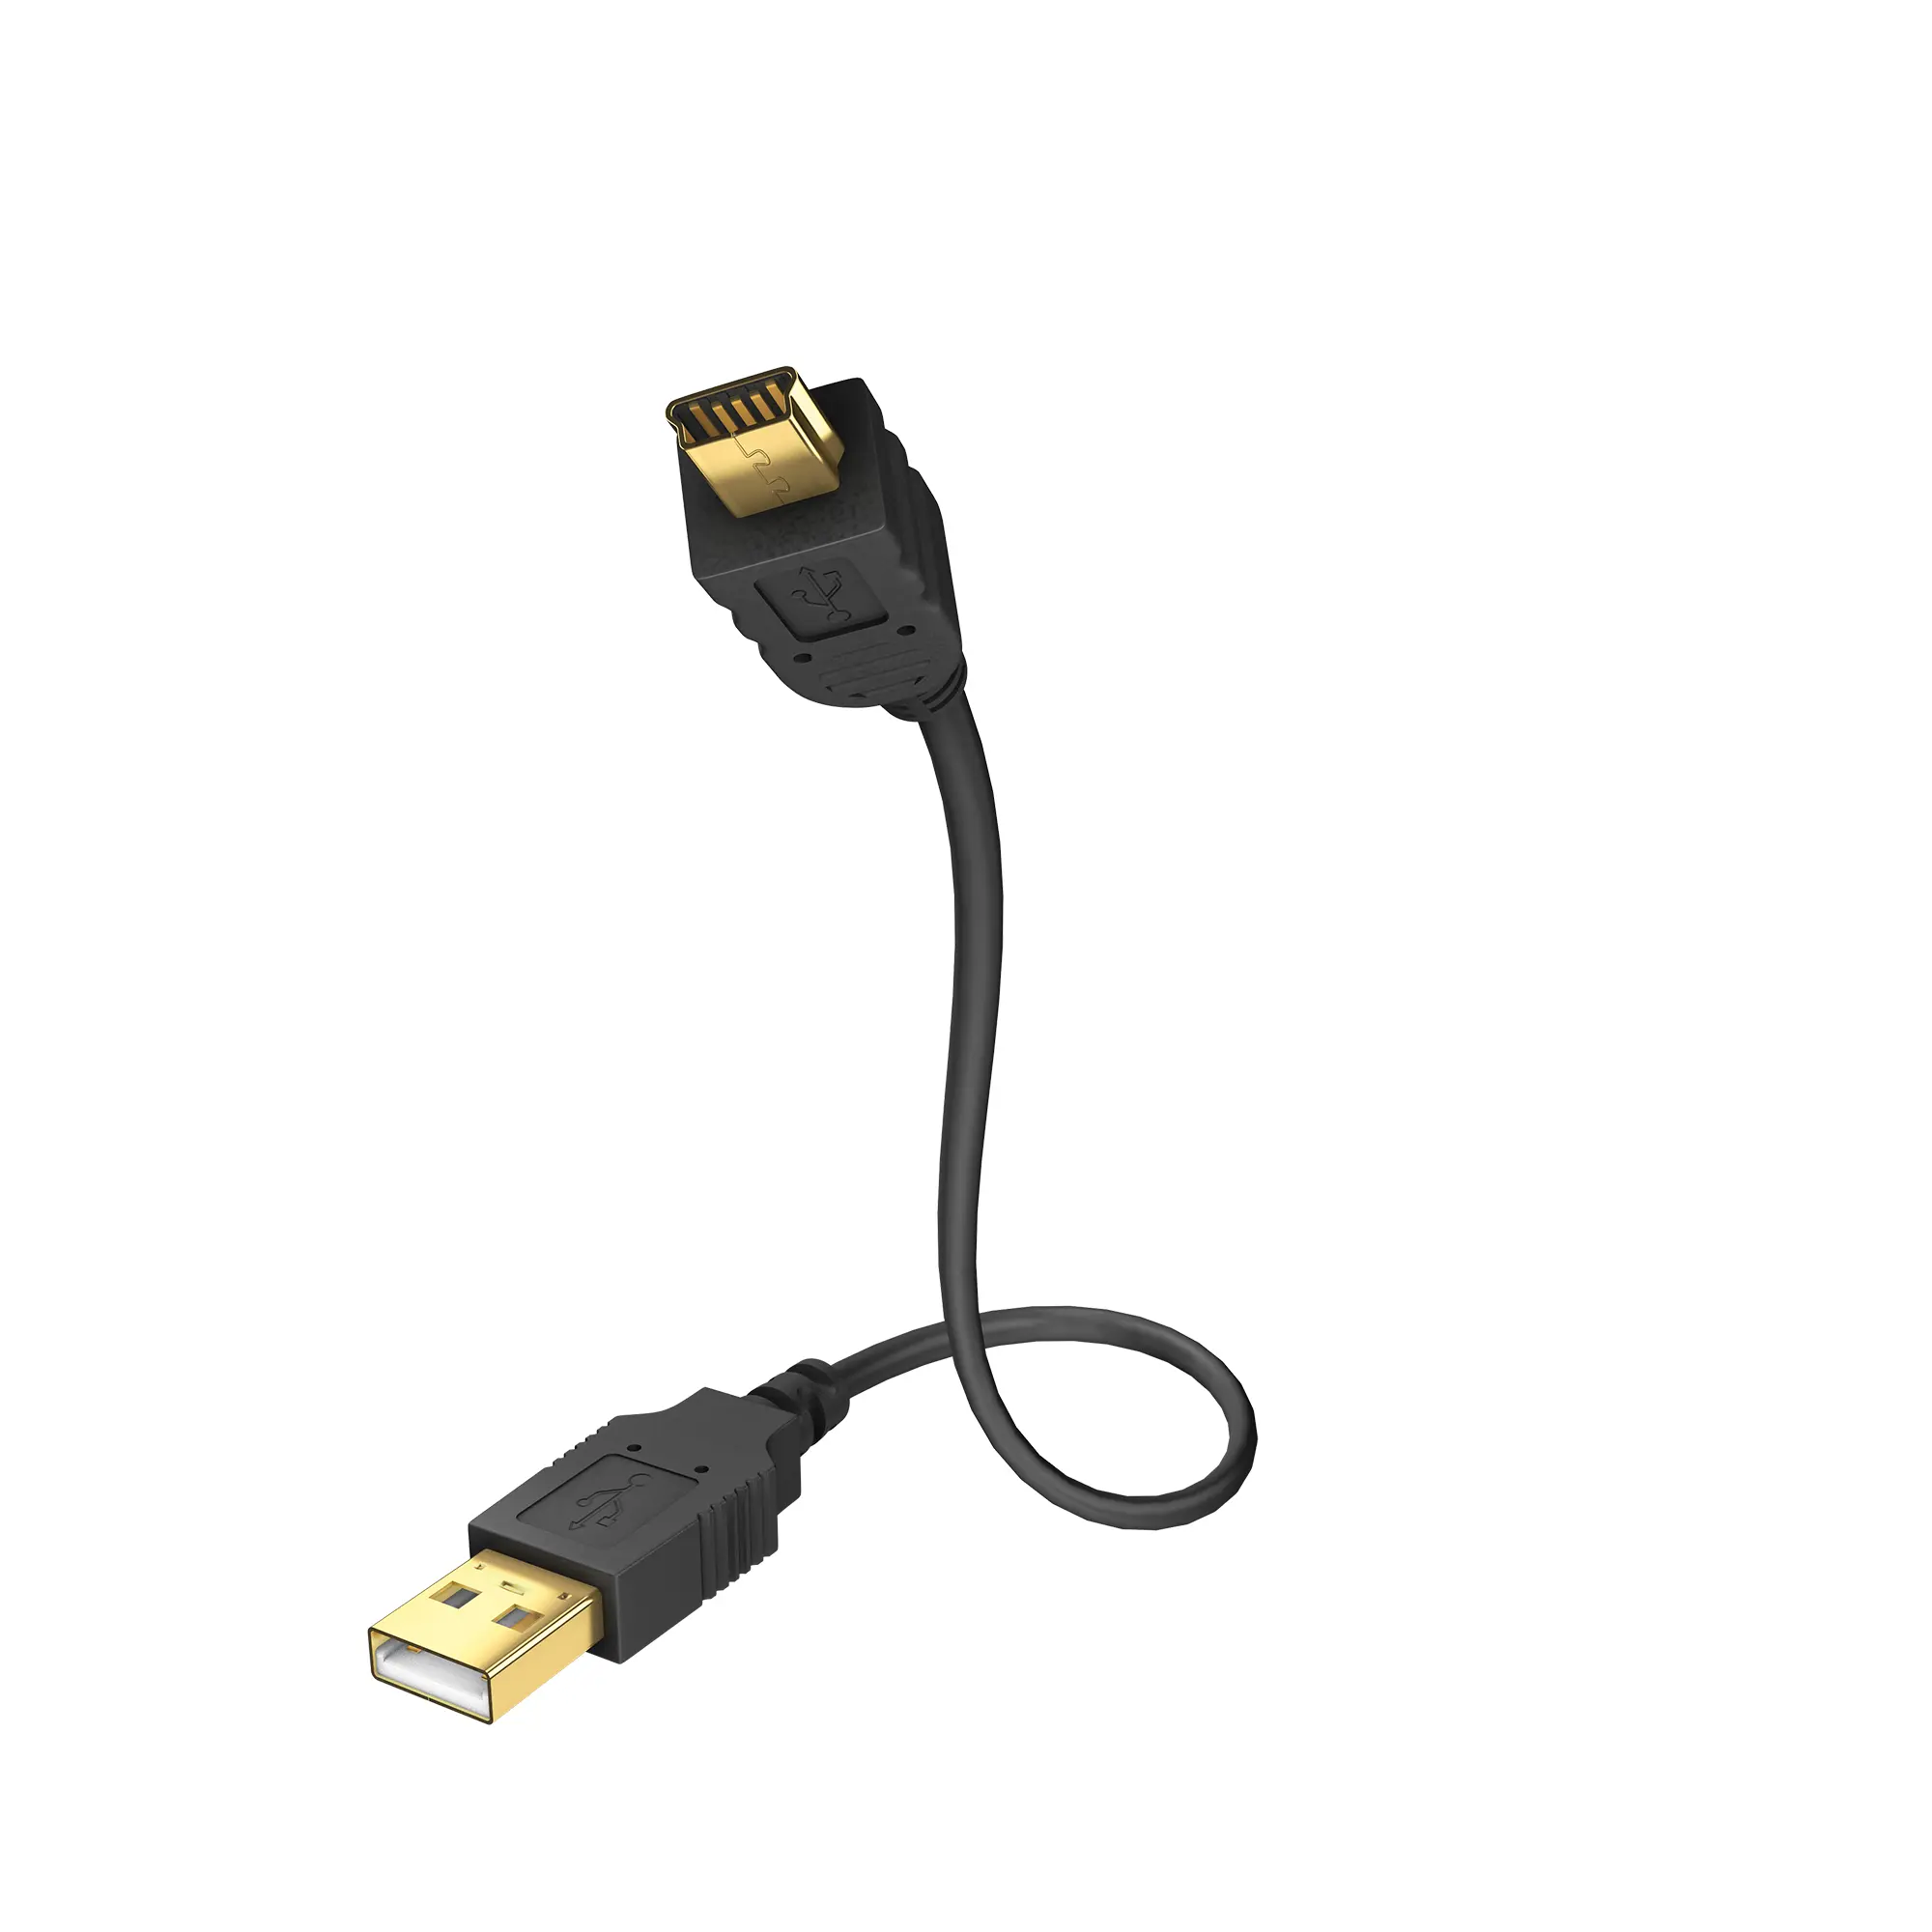 High-speed USB A < > USB Mini B